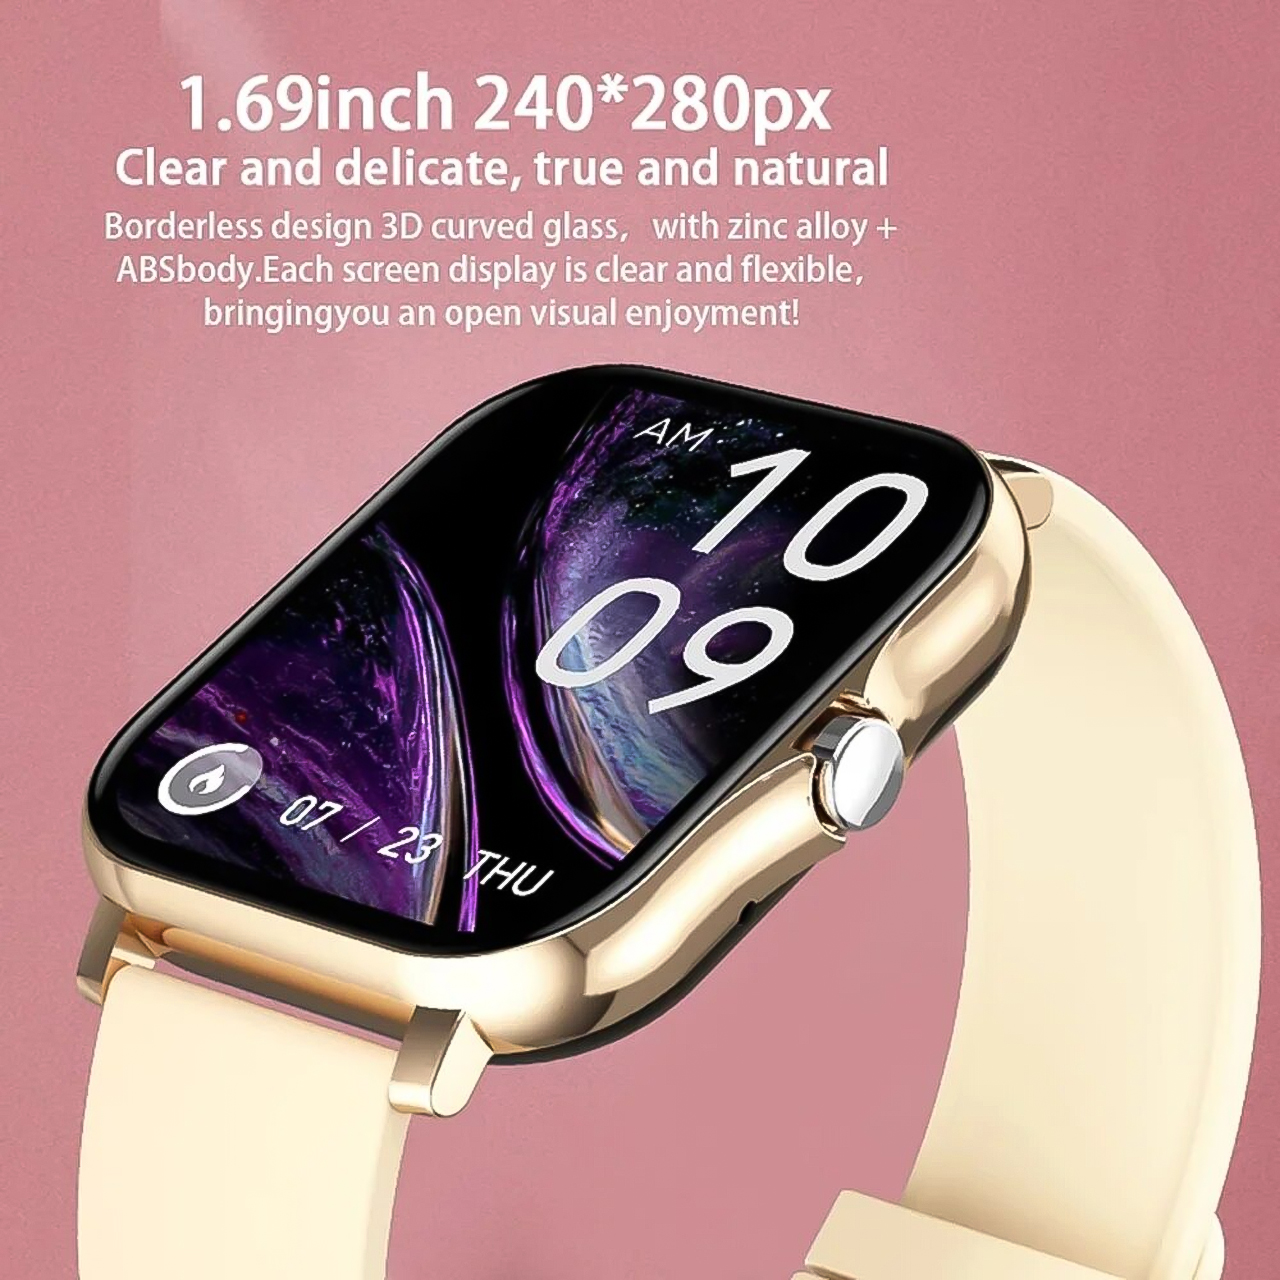 Đồng hồ thông minh Vinetteam Smartwatch Y13 kết nối bluetooth, nghe gọi 2 chiều, nhận thông báo, theo dõi nhịp tim - hàng chính hãng